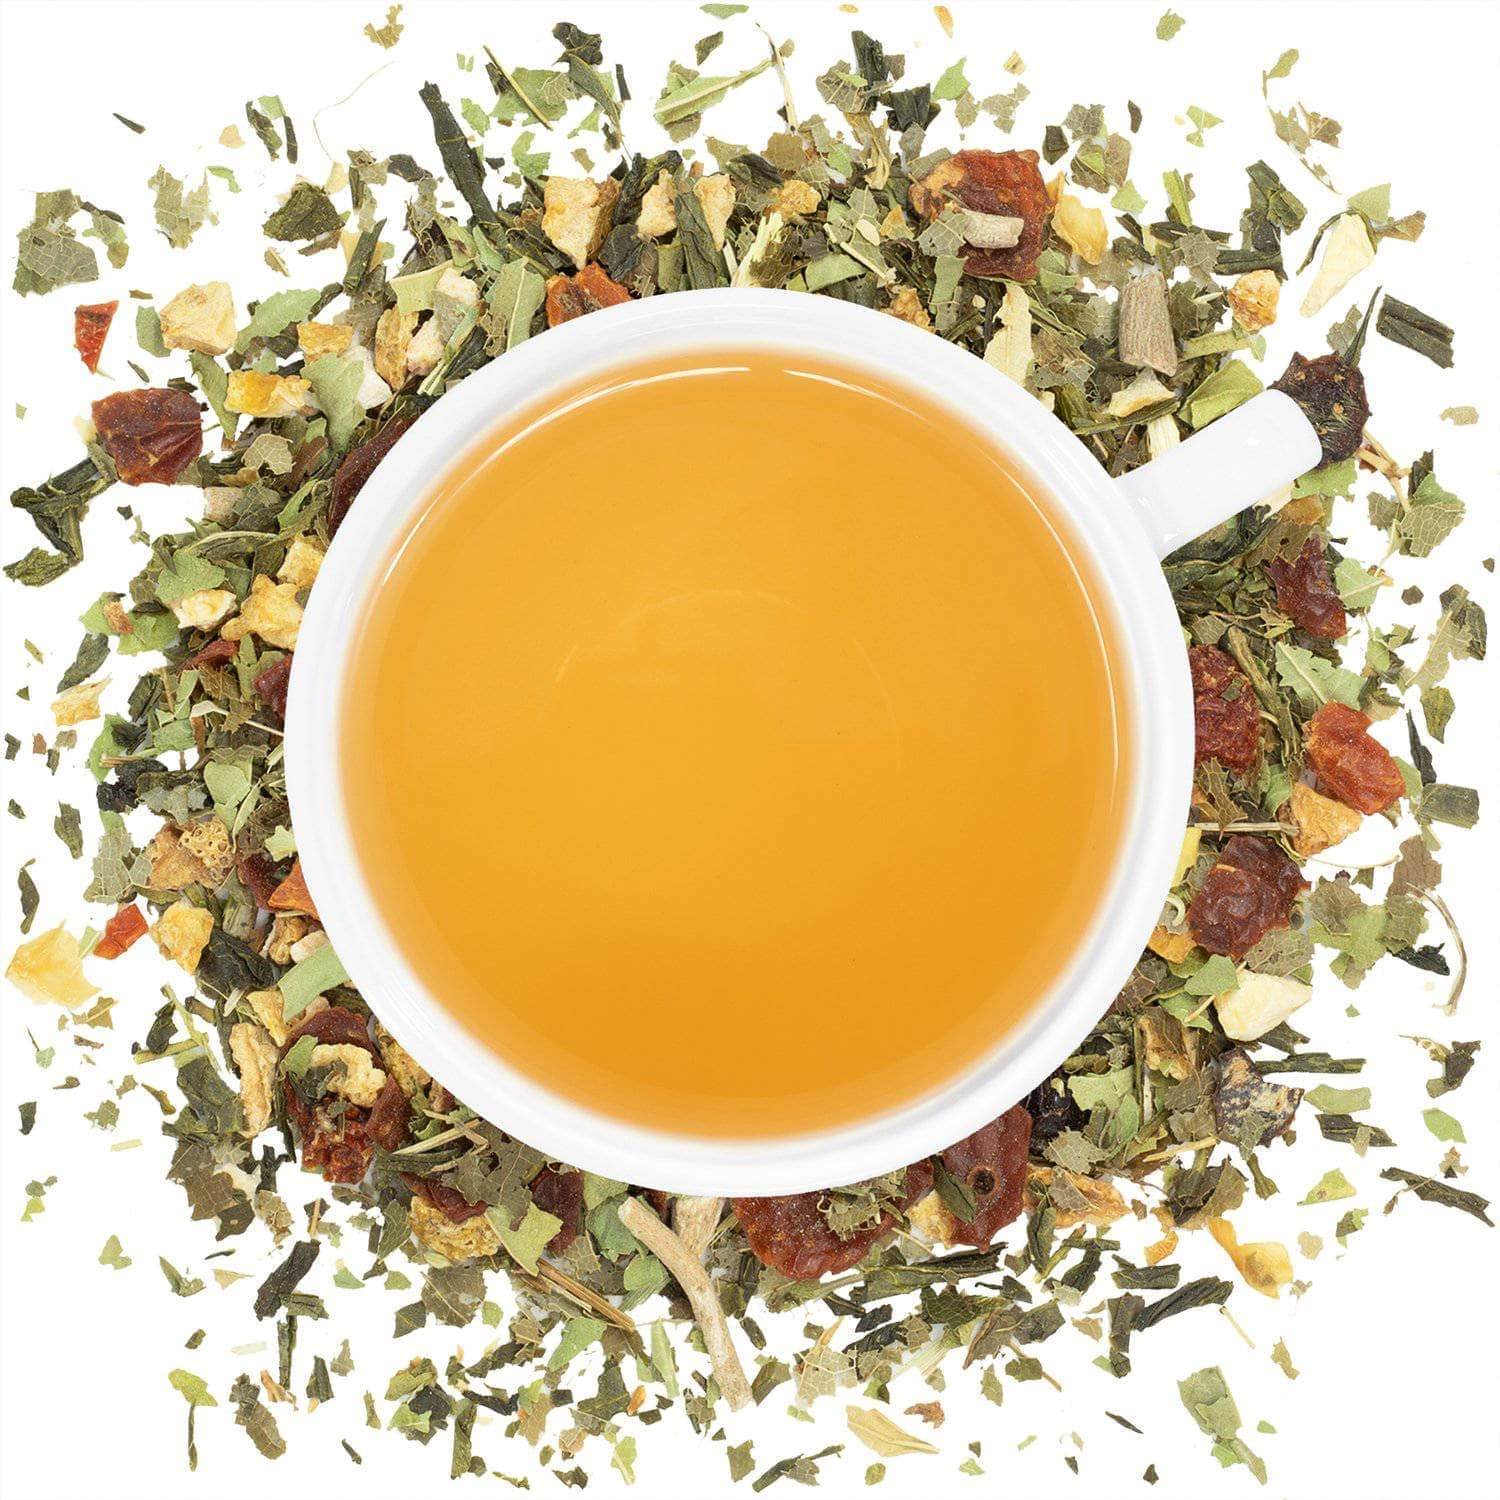 Organic Live Fit Tea - Loose Leaf Tea - Full Leaf Tea Company